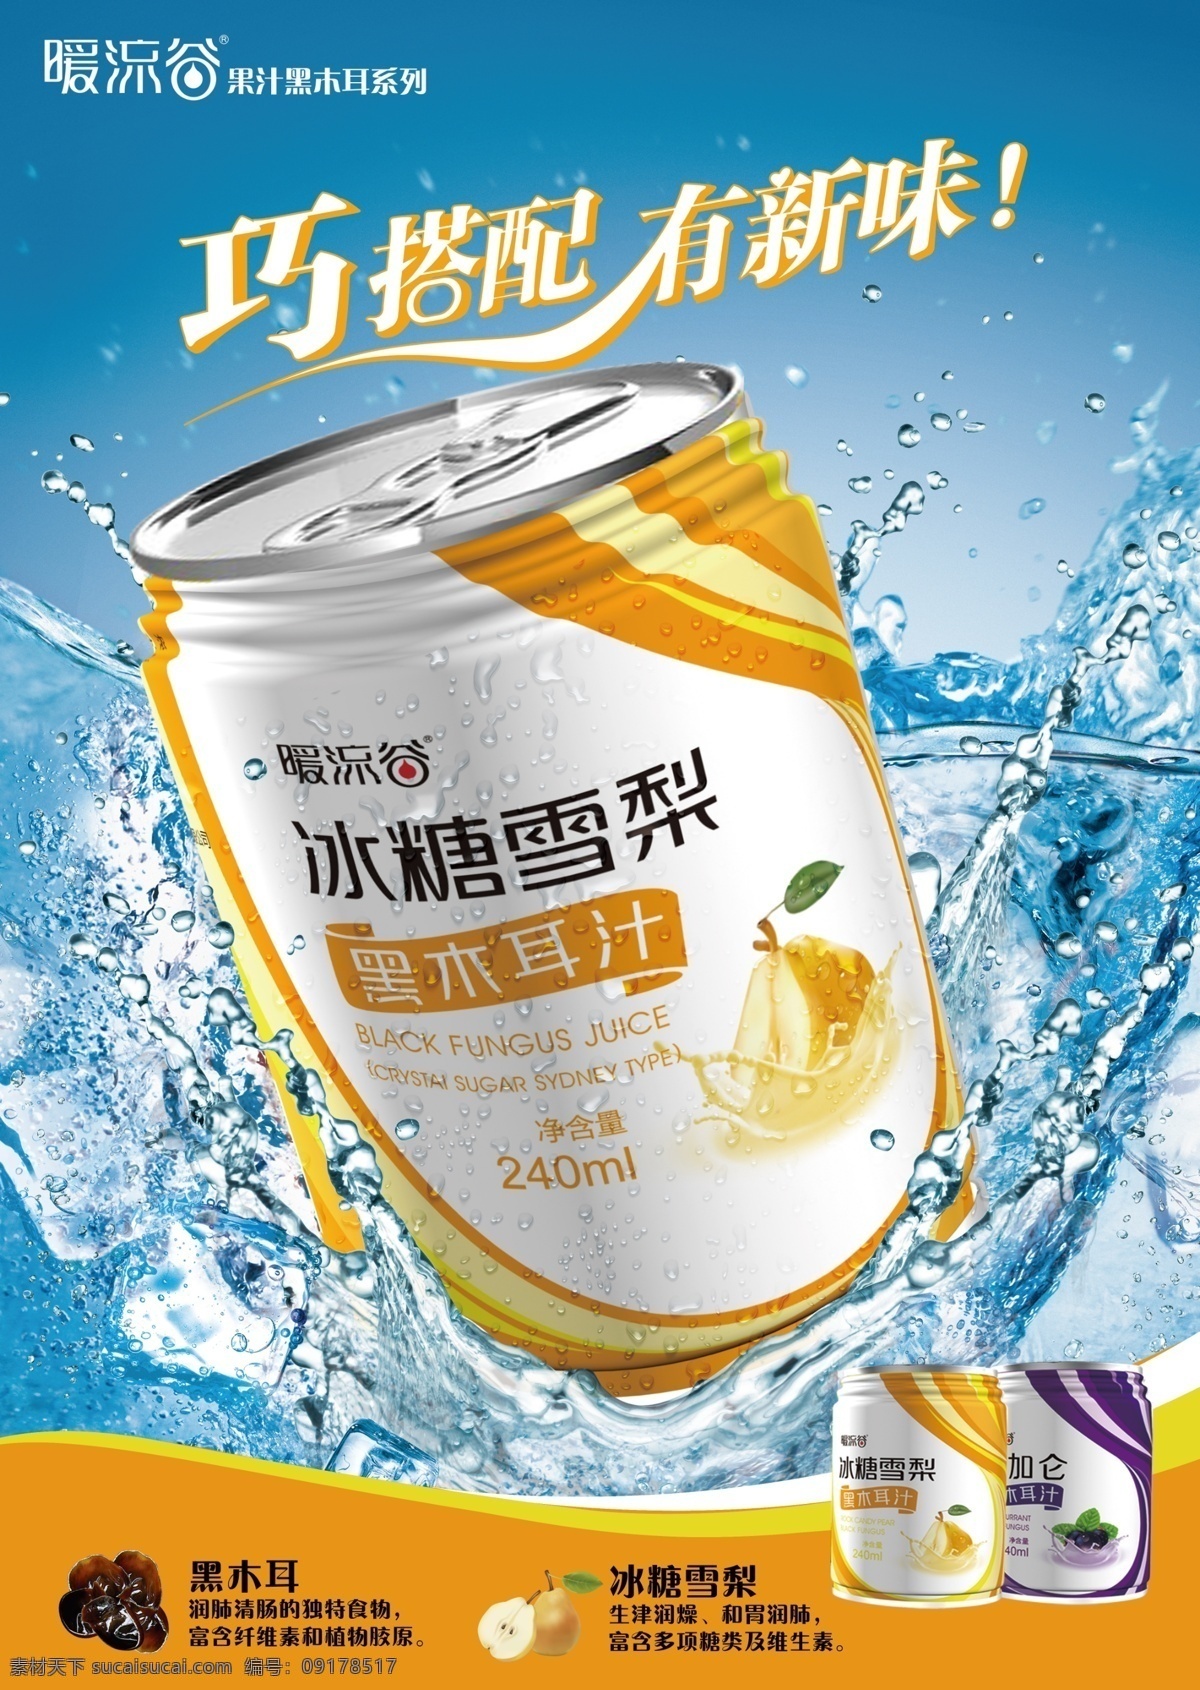 饮料海报 饮料 饮品宣传 果汁 水珠 巧搭配 有新味 广告设计模板 源文件